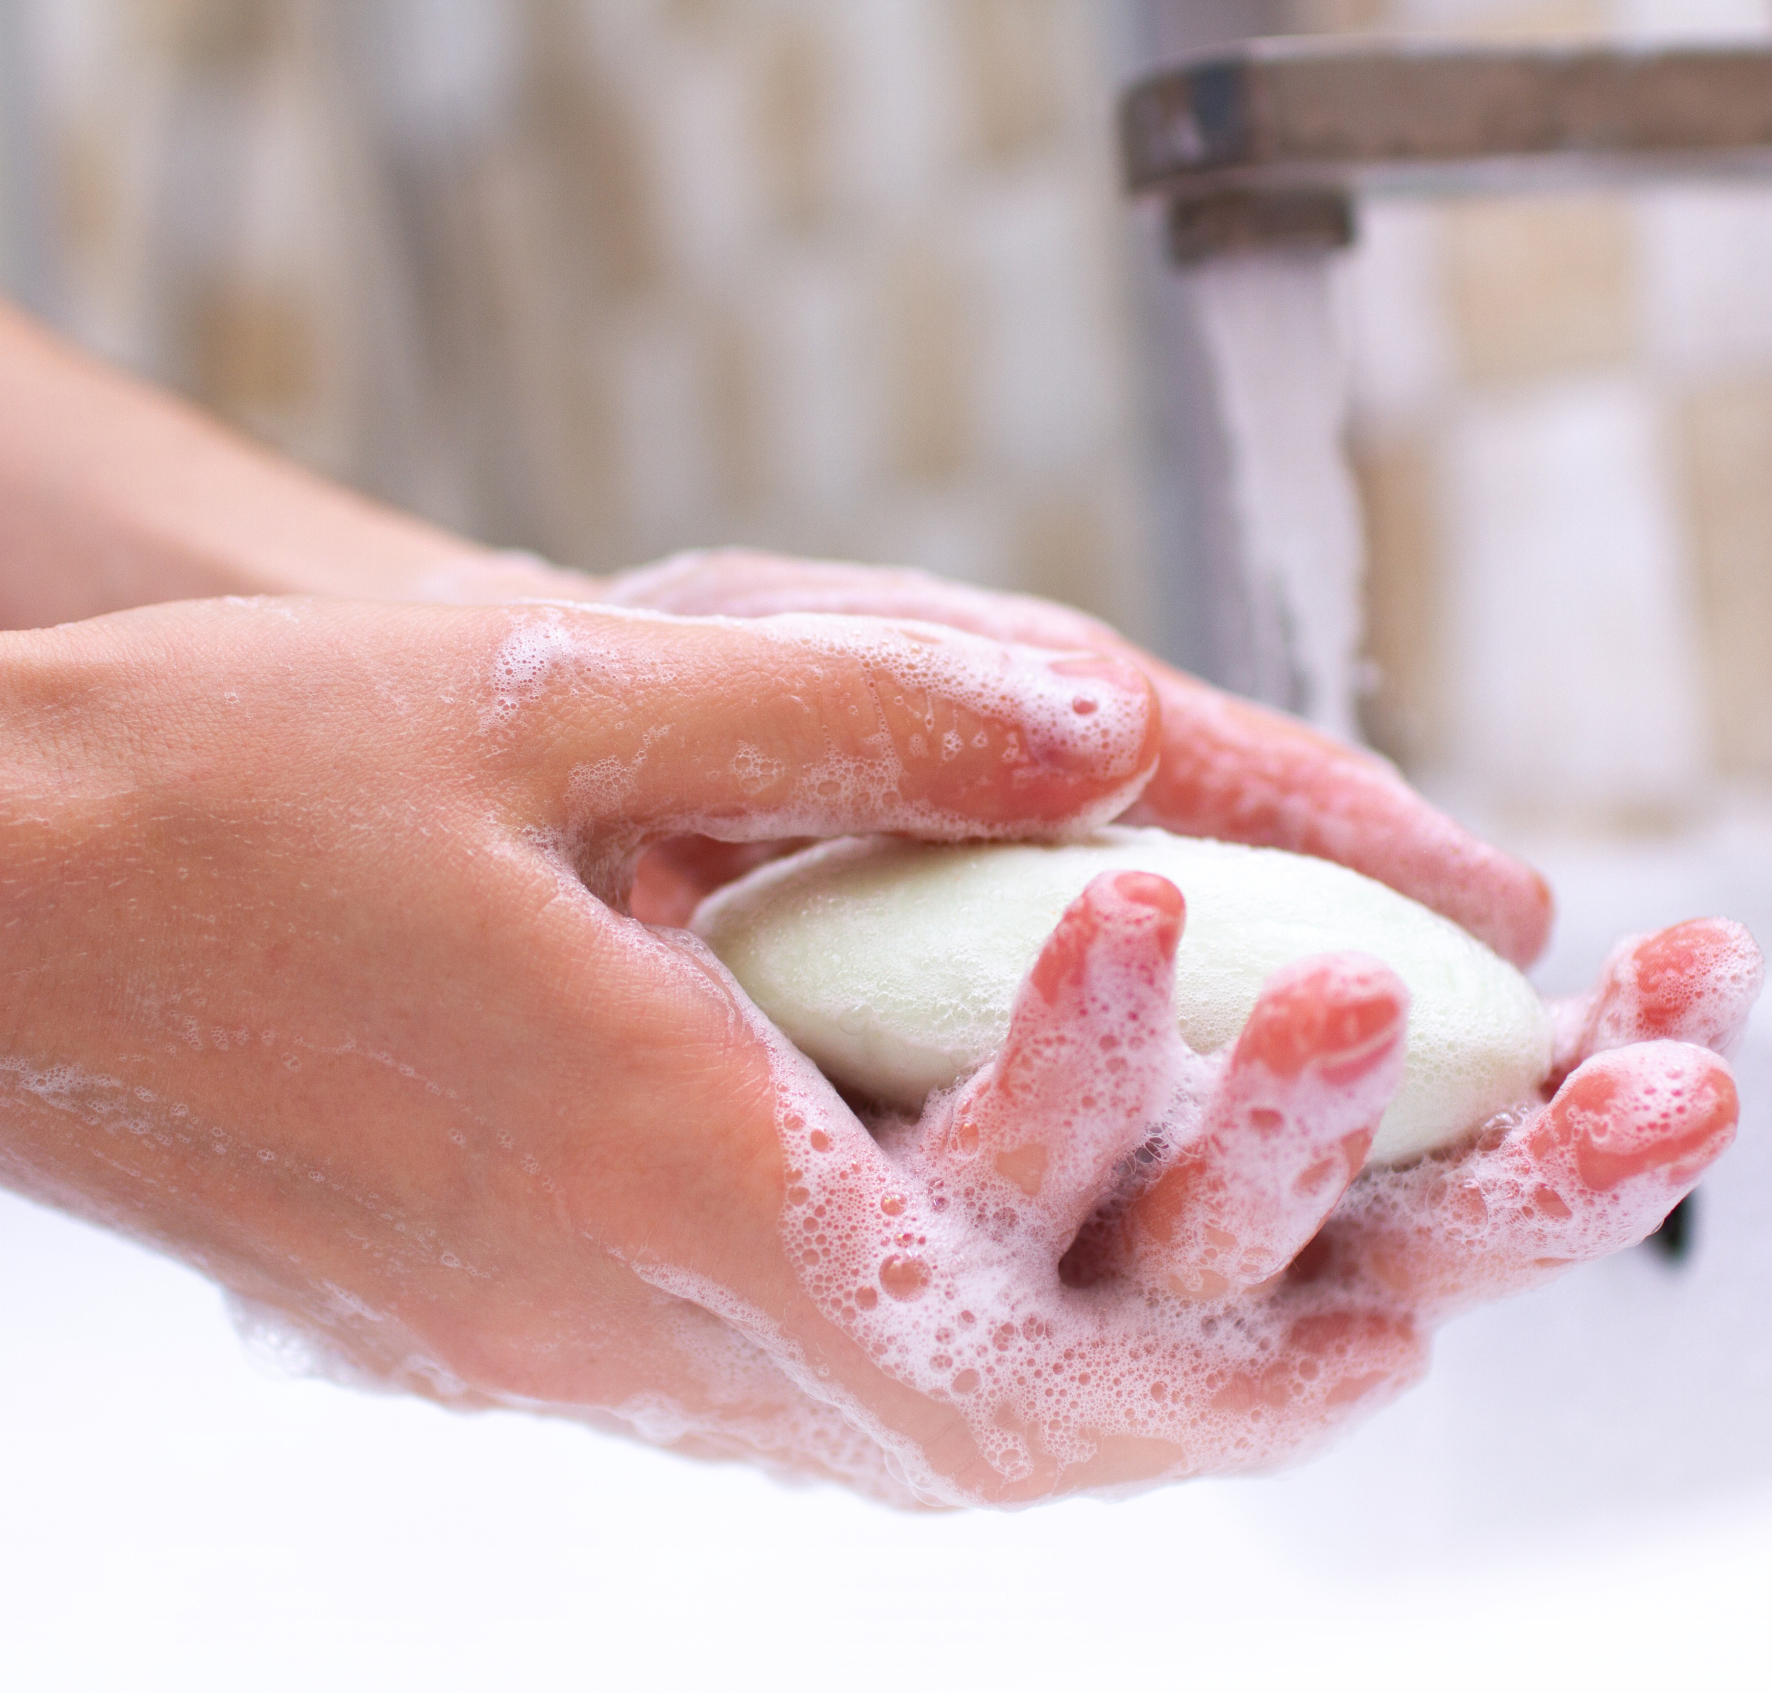 COVID-19: Santa Casa reforça conscientização sobre higiene das mãos